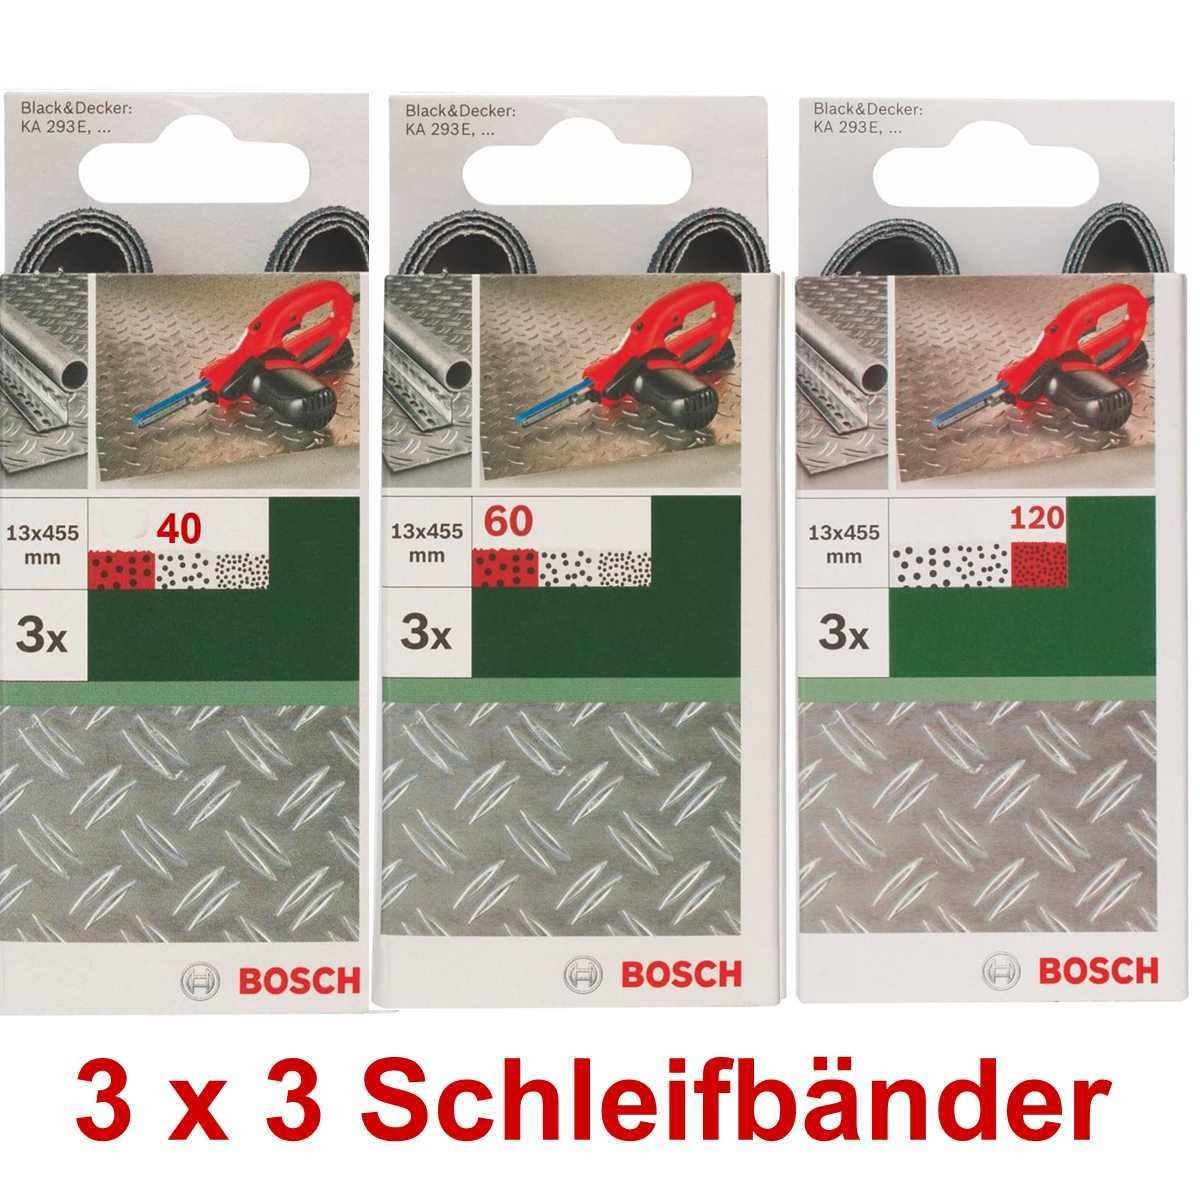 x 13 Schleifbänder für x BOSCH 40,60 mm, B+D 293E Bohrfutter 451 KA 3 Powerfile Bosch 3